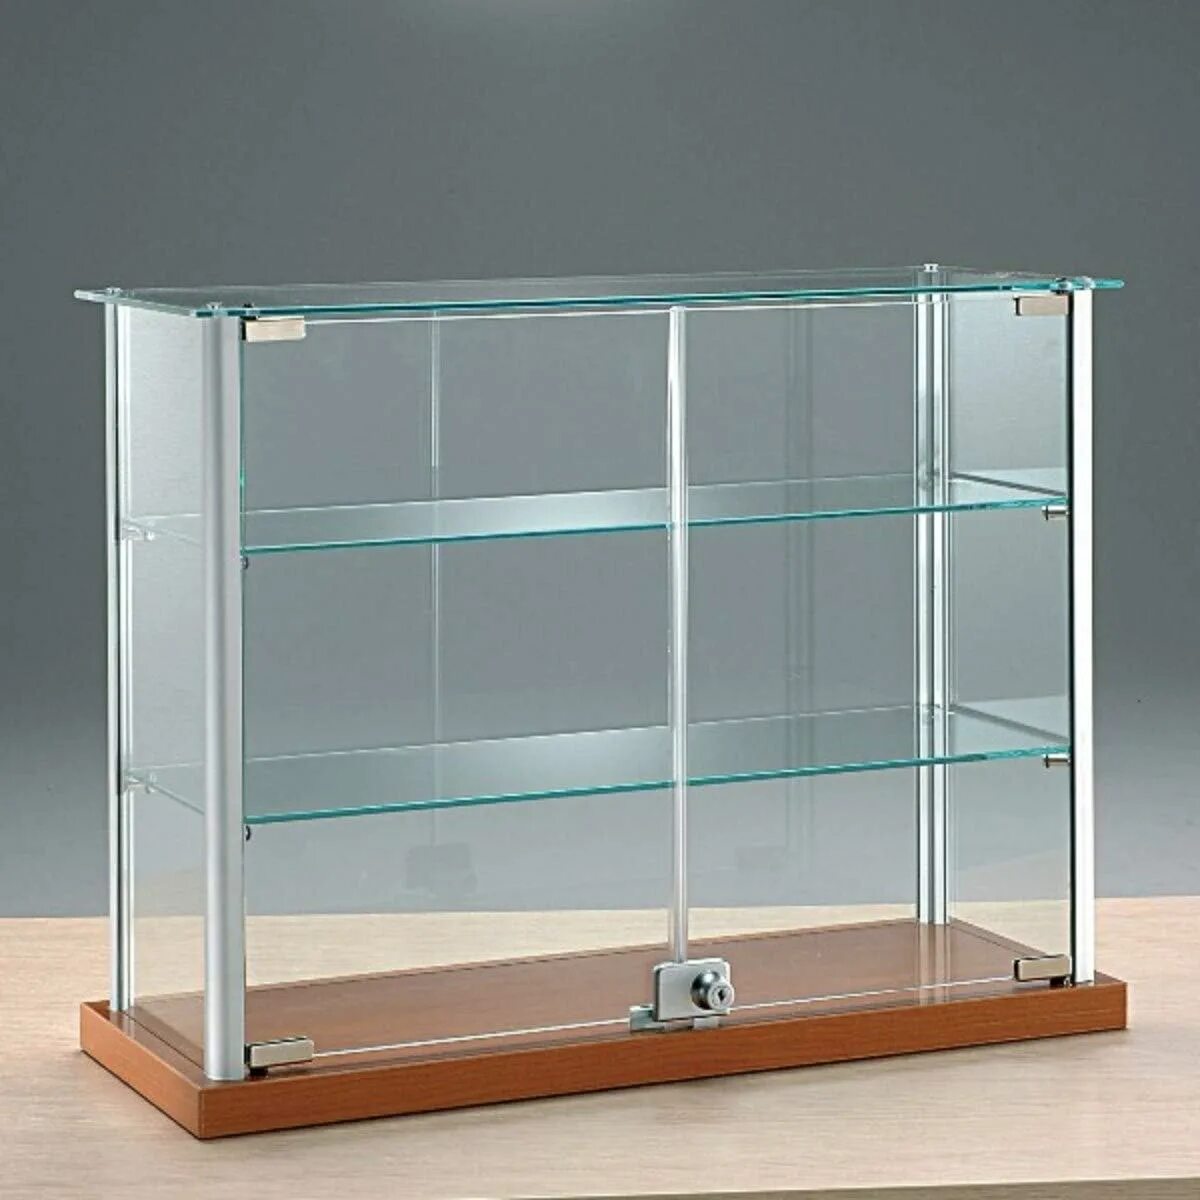 Витрина Glass Showcase h 1800. Витрина стеклянная 50#30. Витрина стеклянная "Saphir Noir". Небольшая витрина